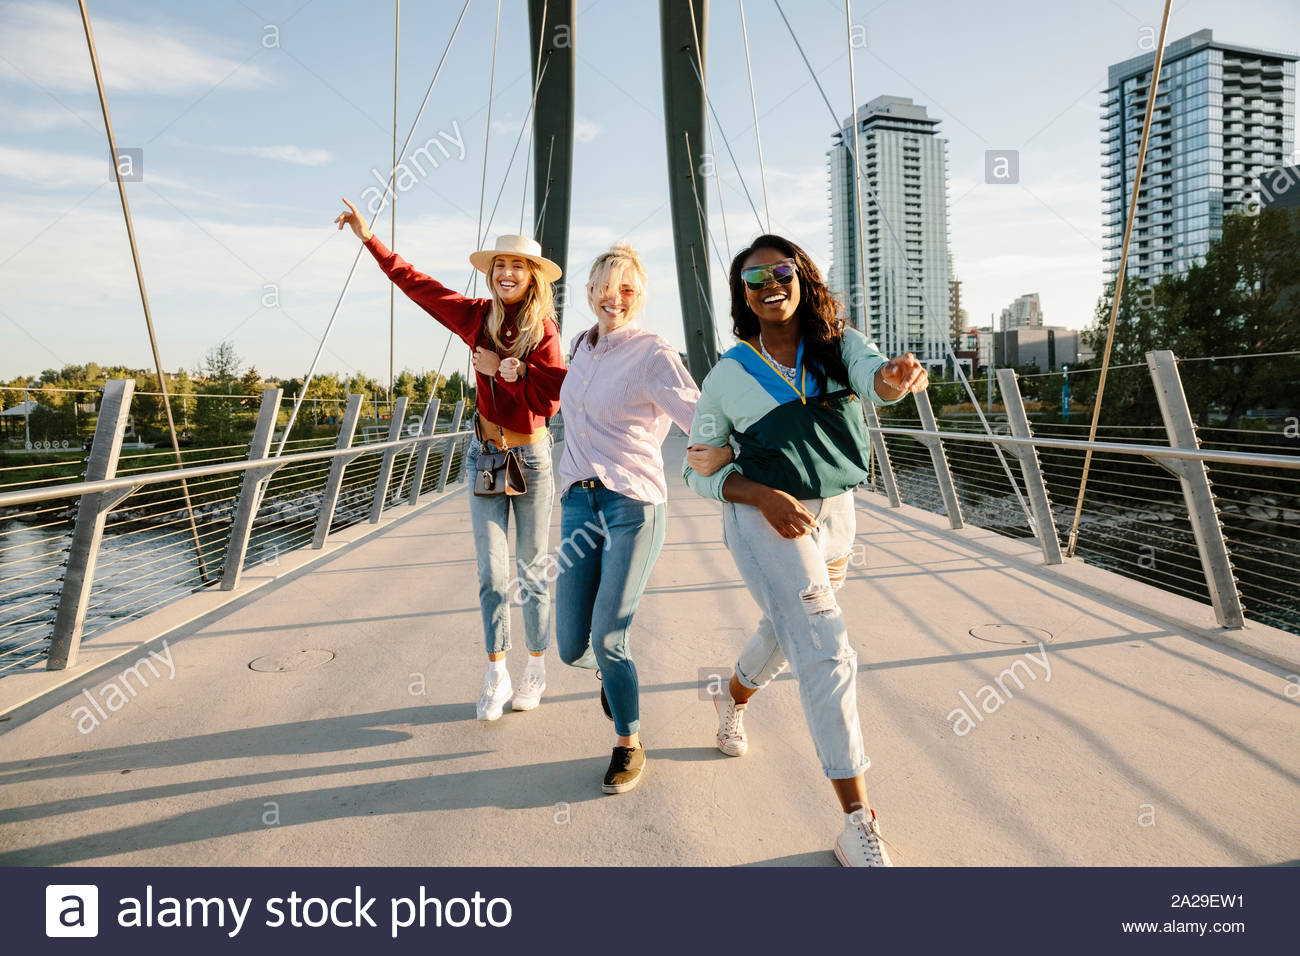 Ludique, Portrait de jeunes femmes insouciantes amis sur sunny, pont urbain Banque D'Images